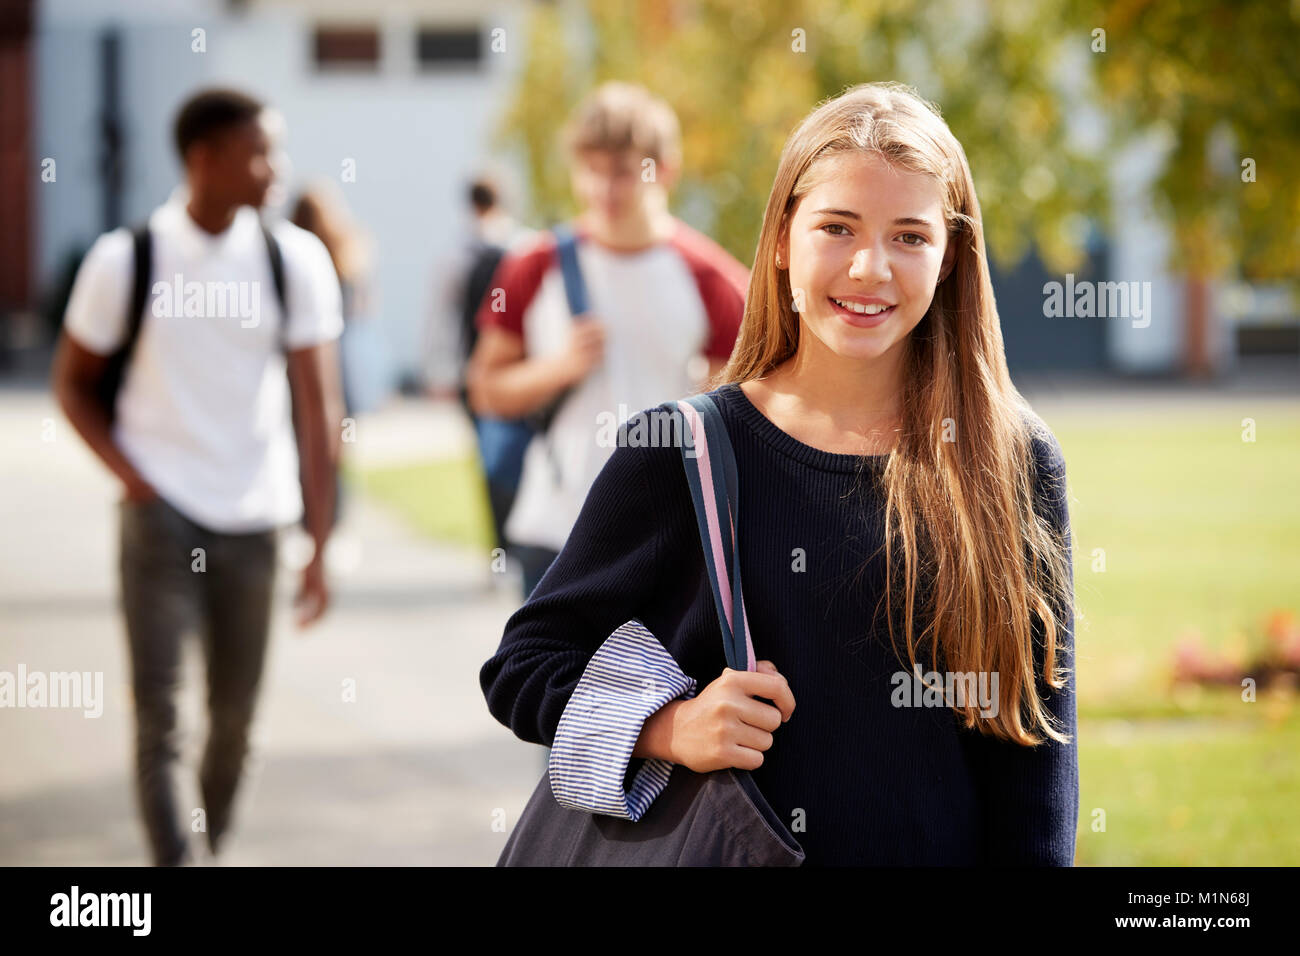 Portrait der weiblichen Teenager Student am College Campus Stockfoto